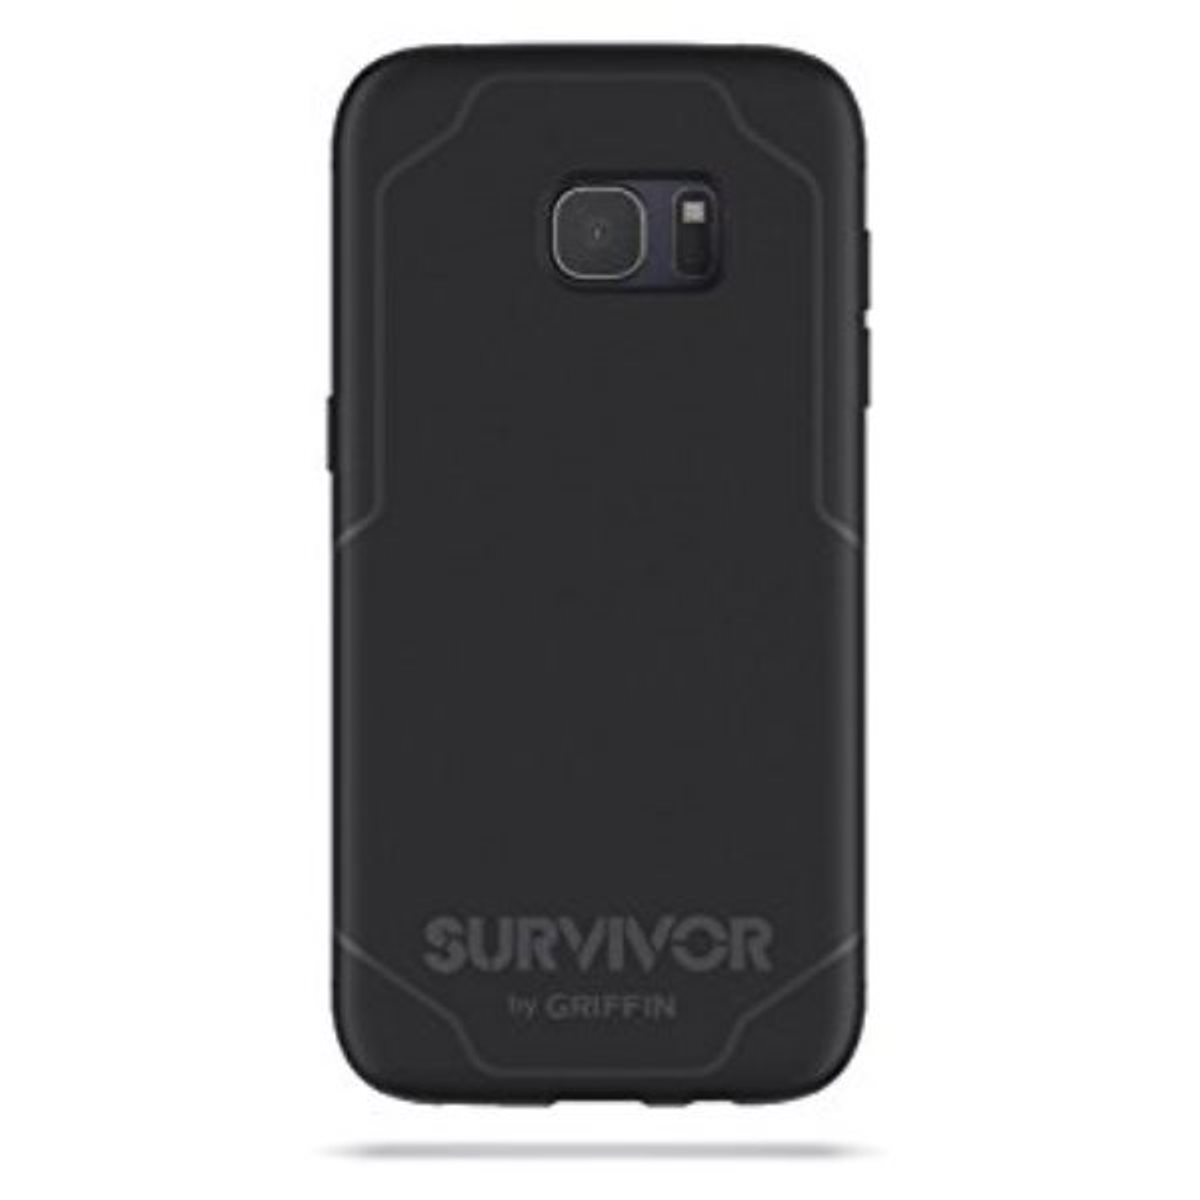 GRIFFIN Survivor Journey Slim Edge, Galaxy Backcover, Samsung, Rugged, S7 Schwarz